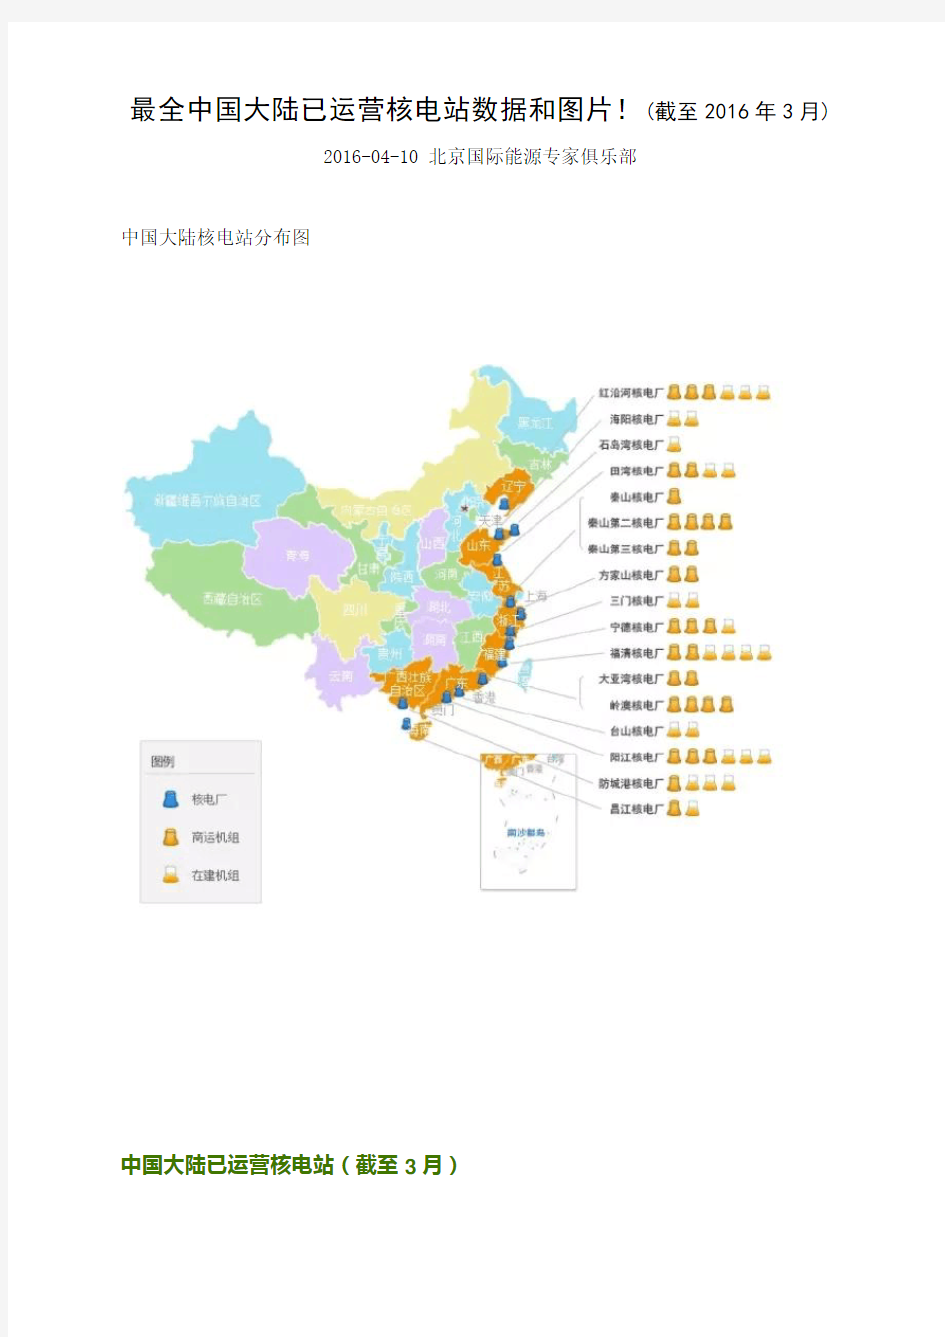 最全中国大陆已运营核电站数据和图片!